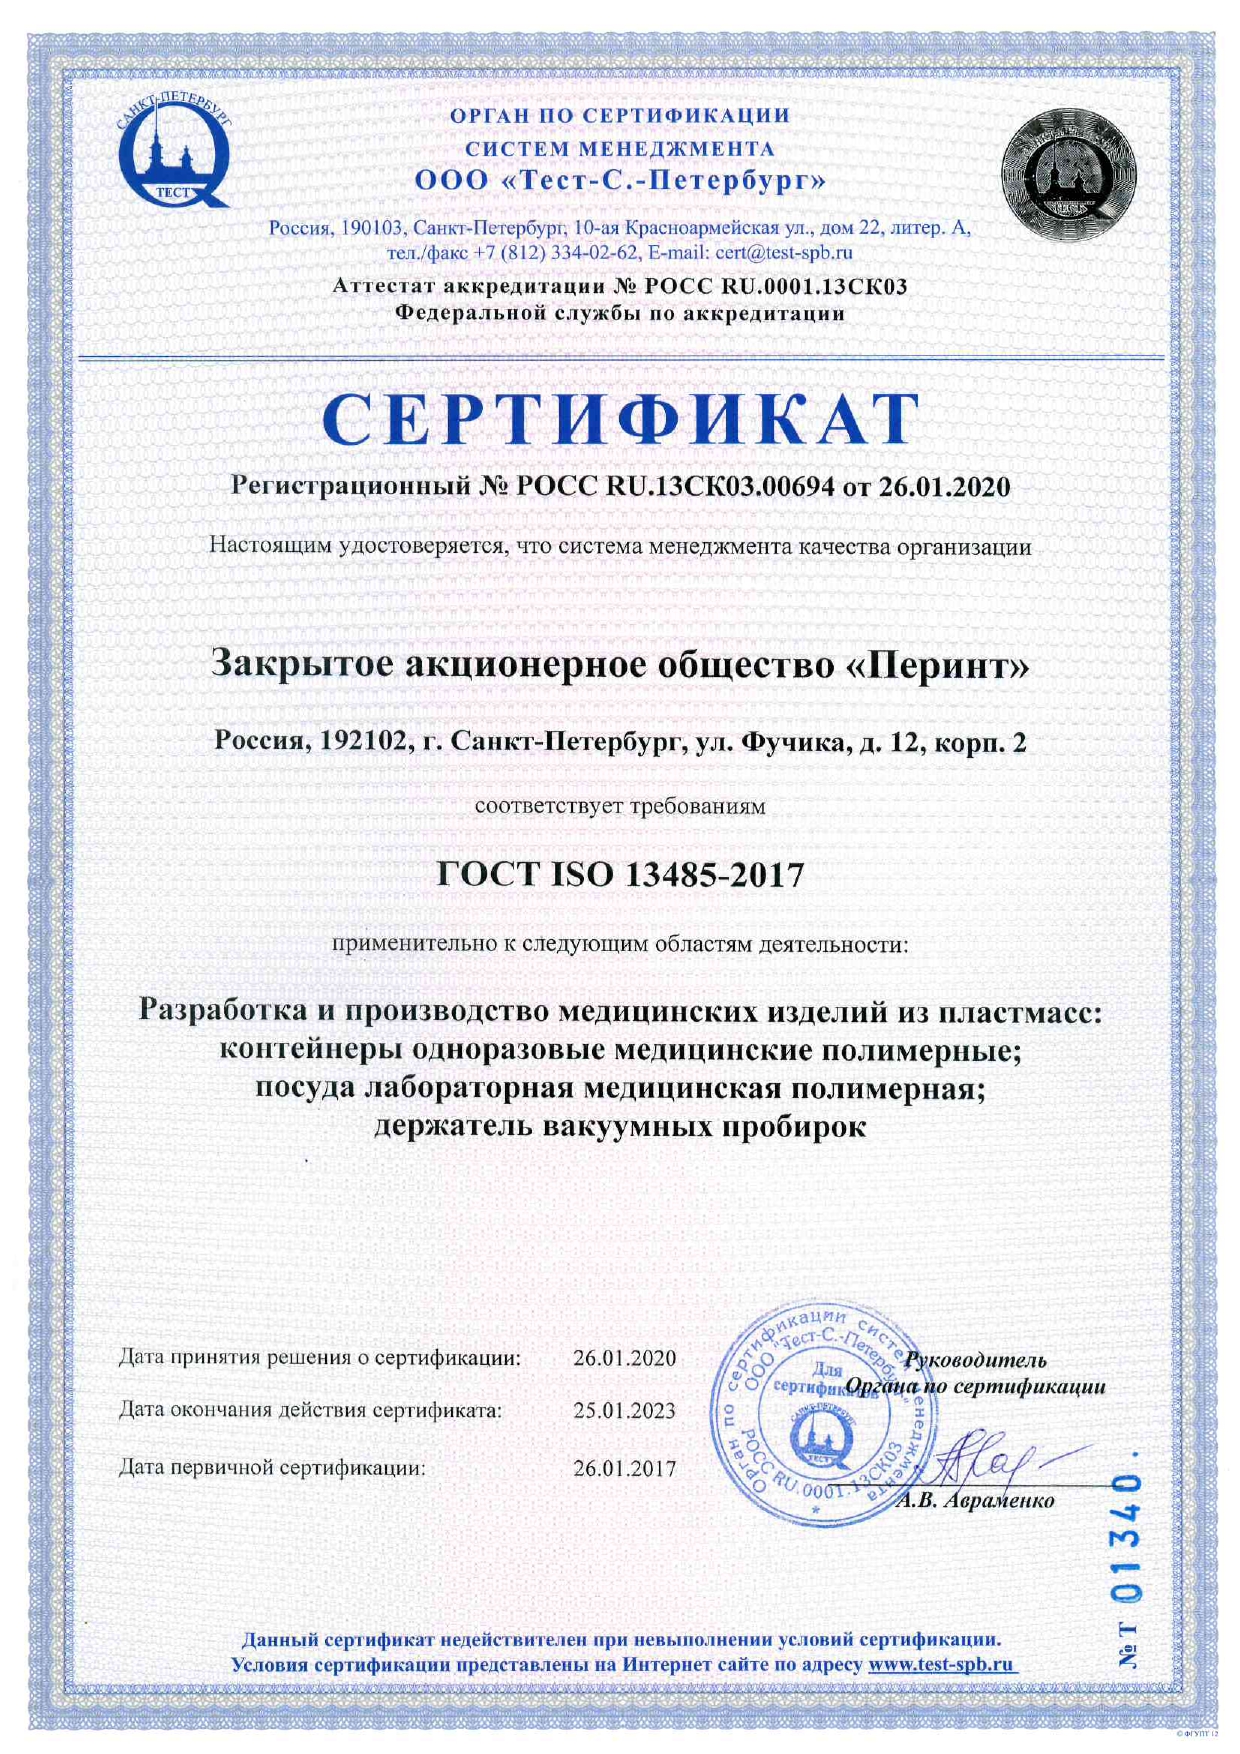 сертификат СМК гост iso 13485_2020-2023_рус